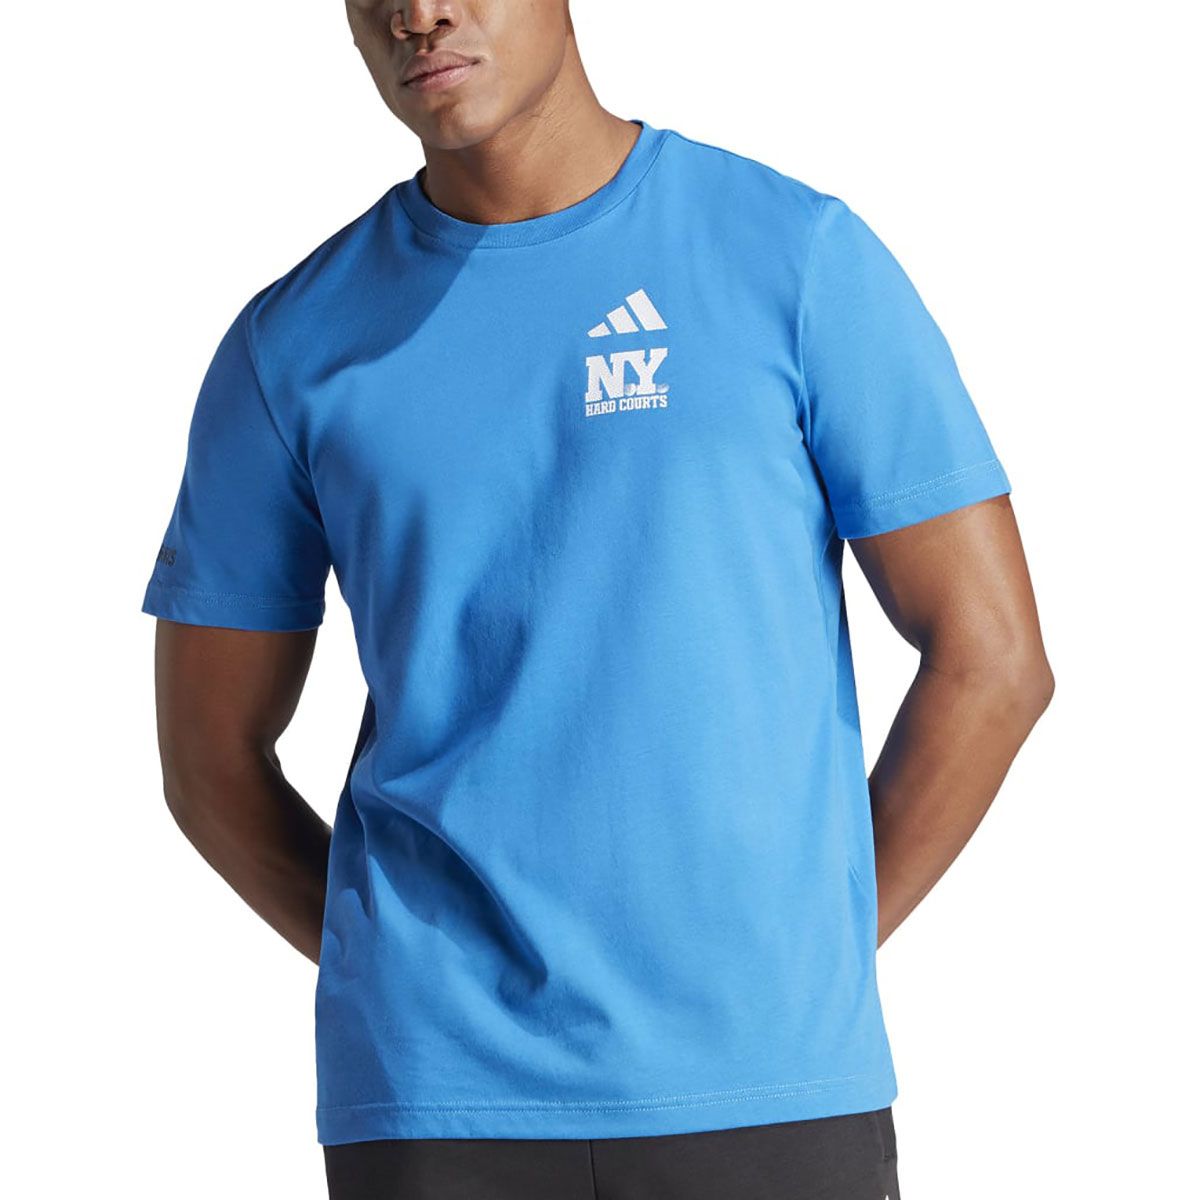 Adidas Aeroready NY Hard Courts Graphic Men's Tennis T-Shirt